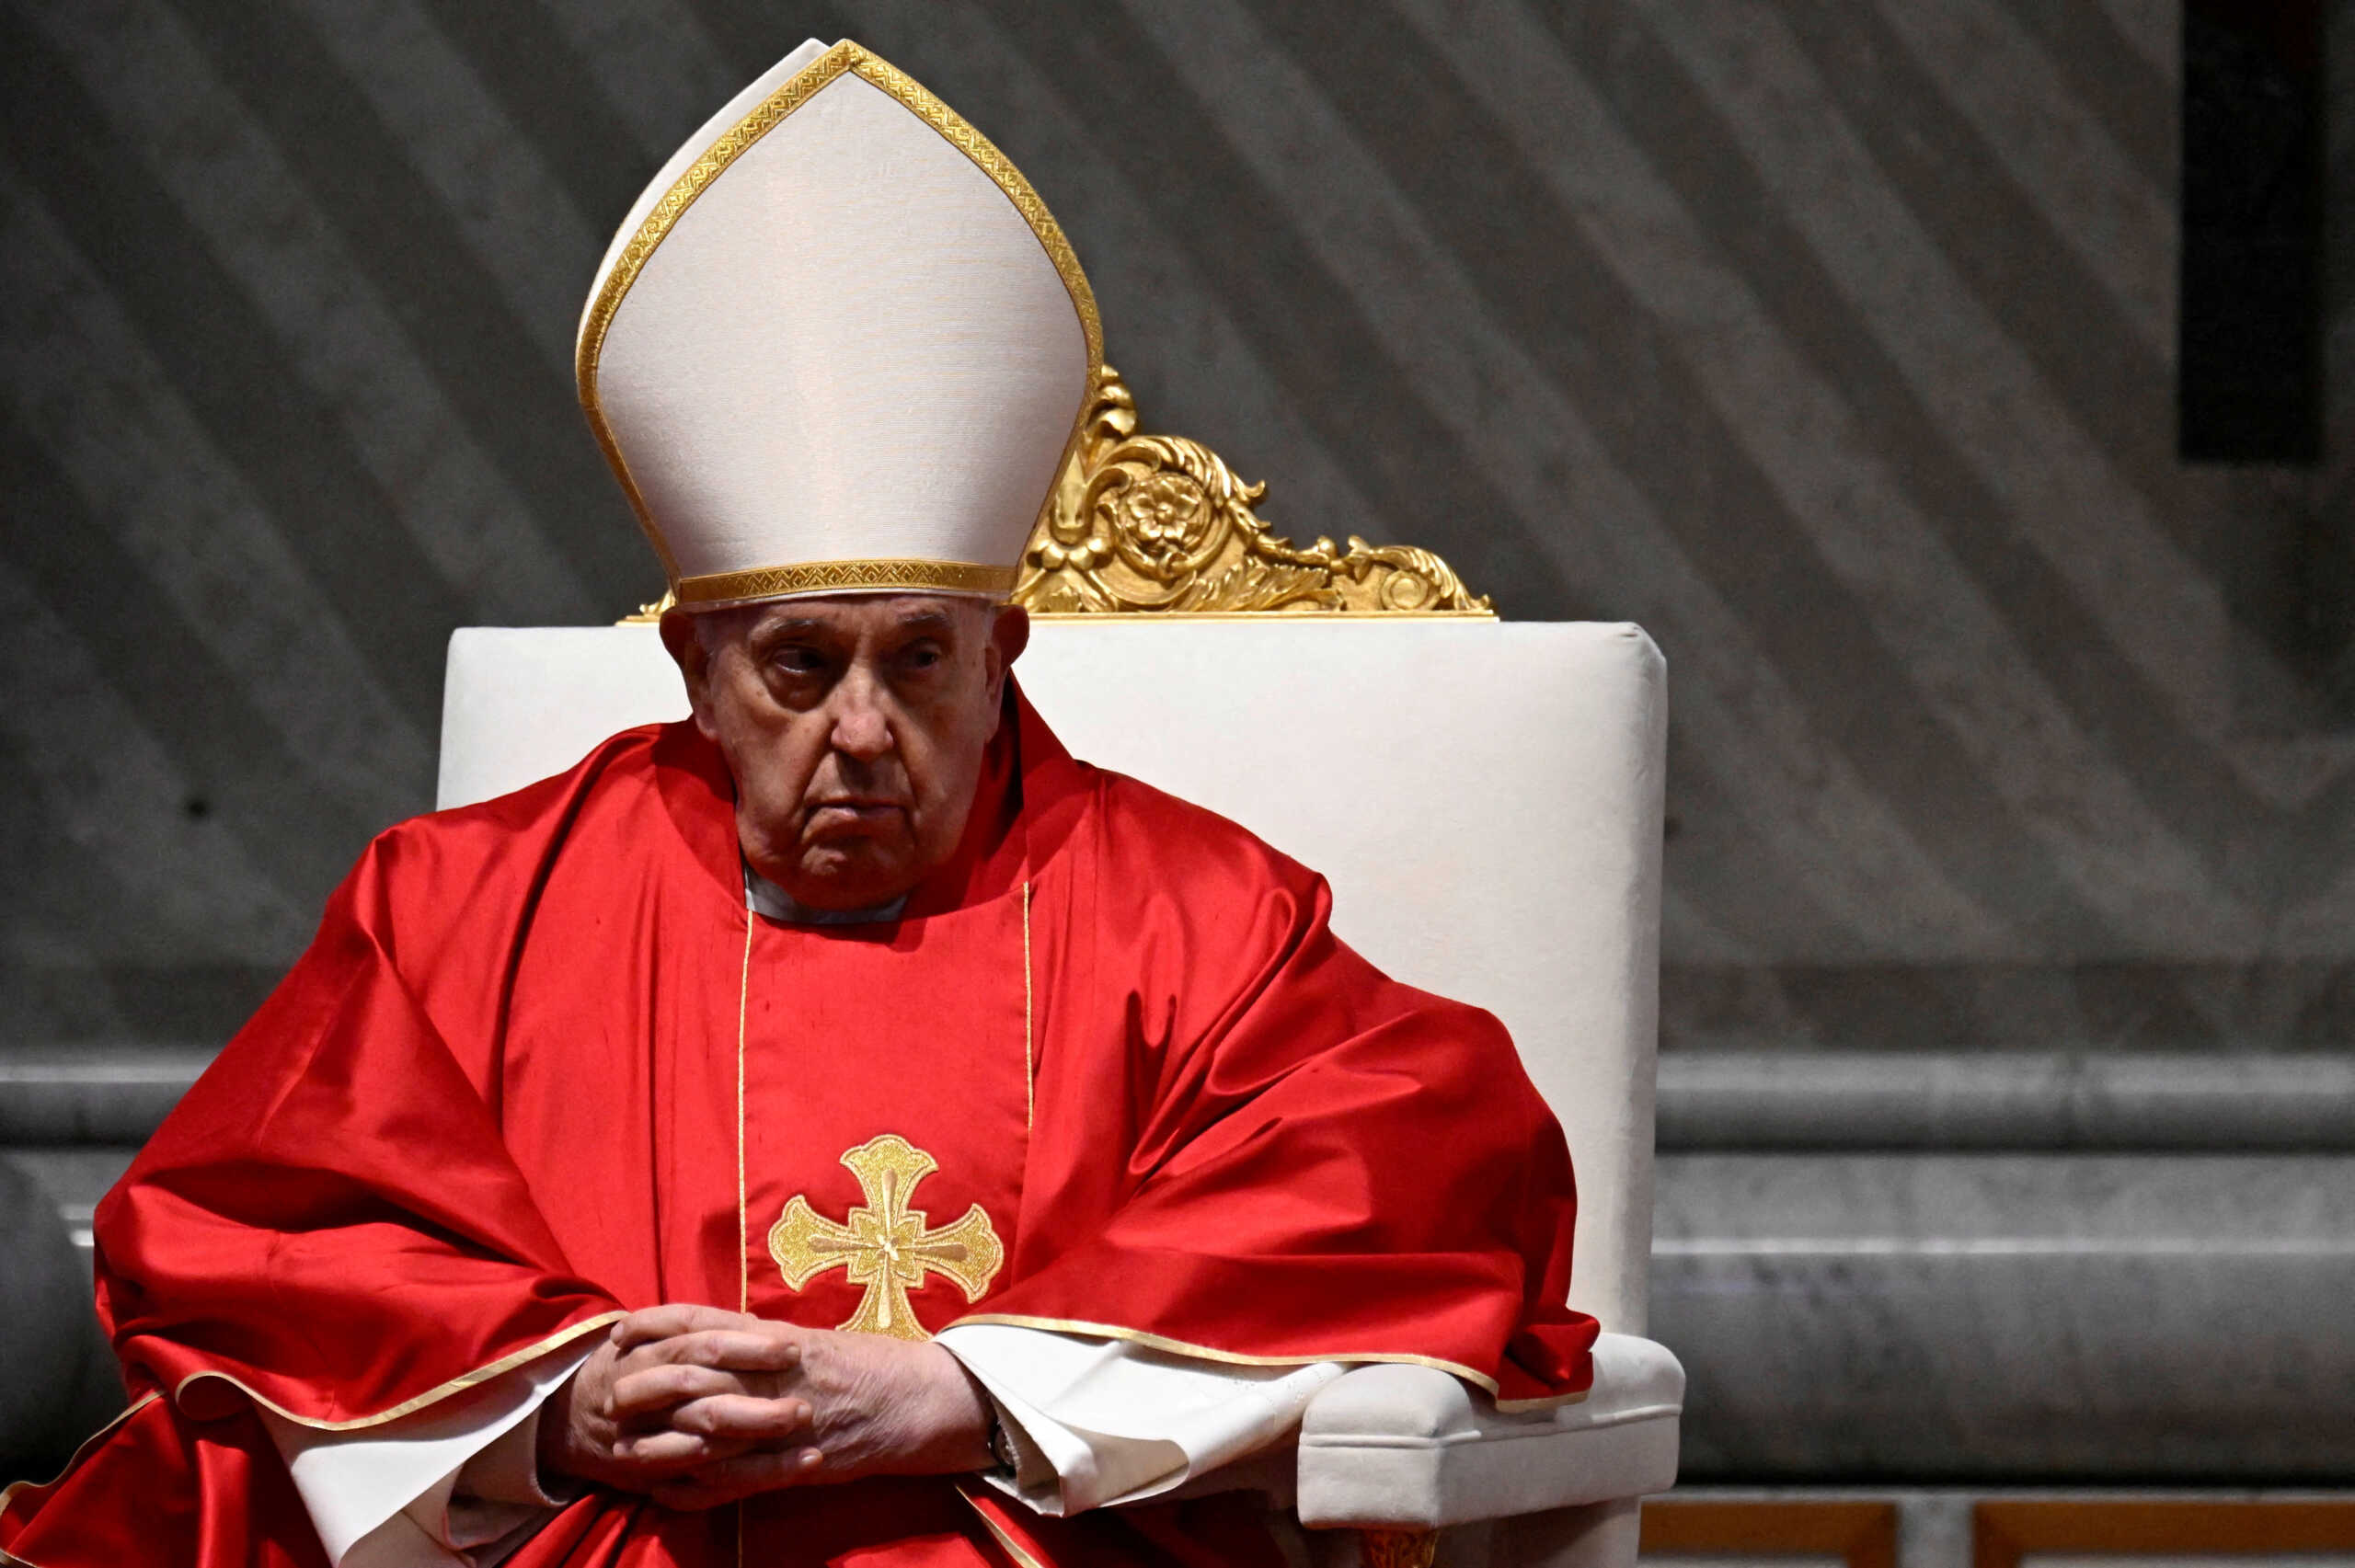 Ο Πάπας Φραγκίσκος σε αναπηρικό αμαξίδιο στην πασχαλινή αγρυπνία των Καθολικών